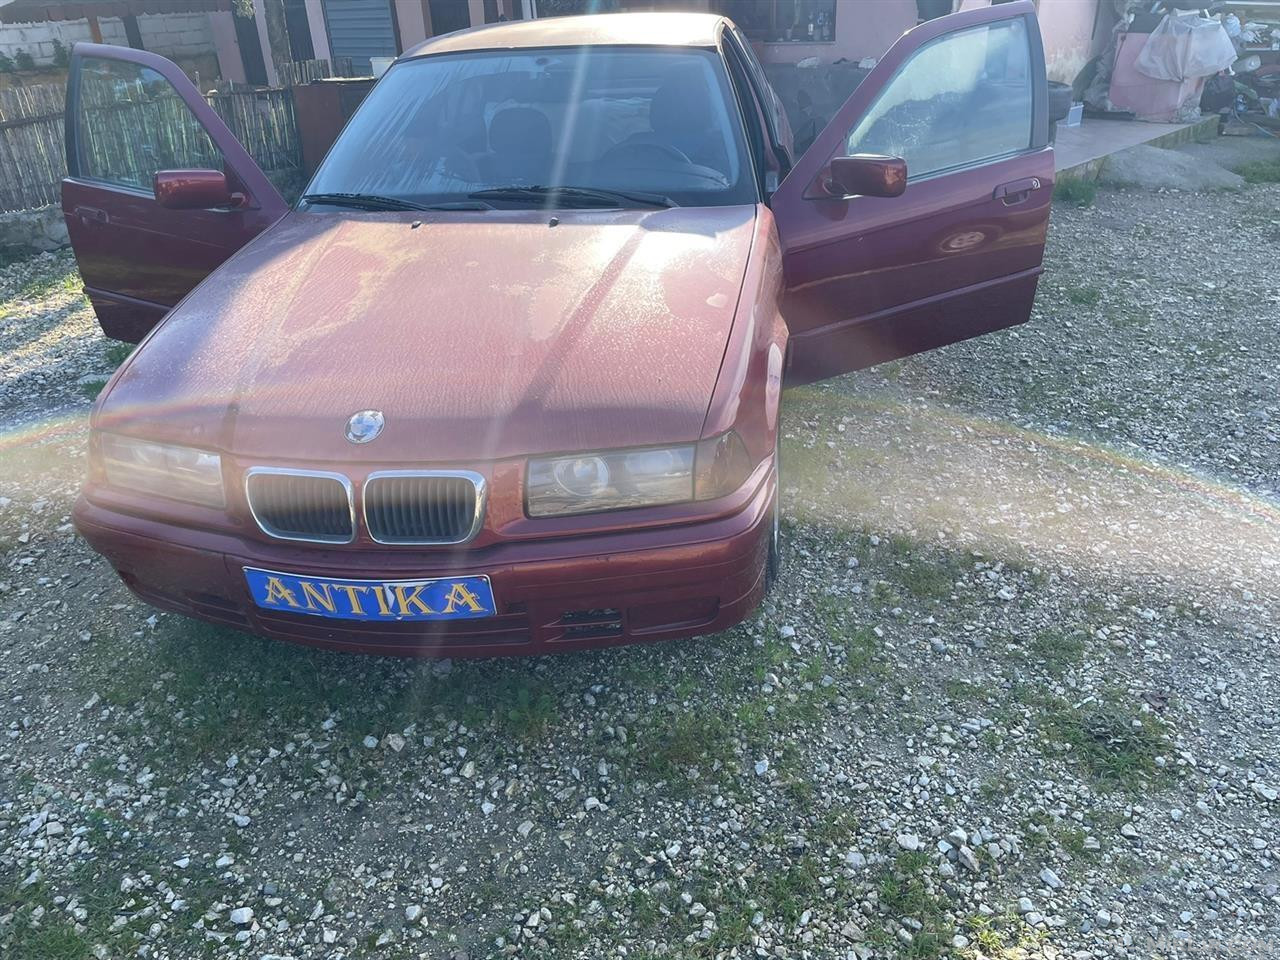 BMW BENZINE VITI 1992 SHITET OSE NDERRIM